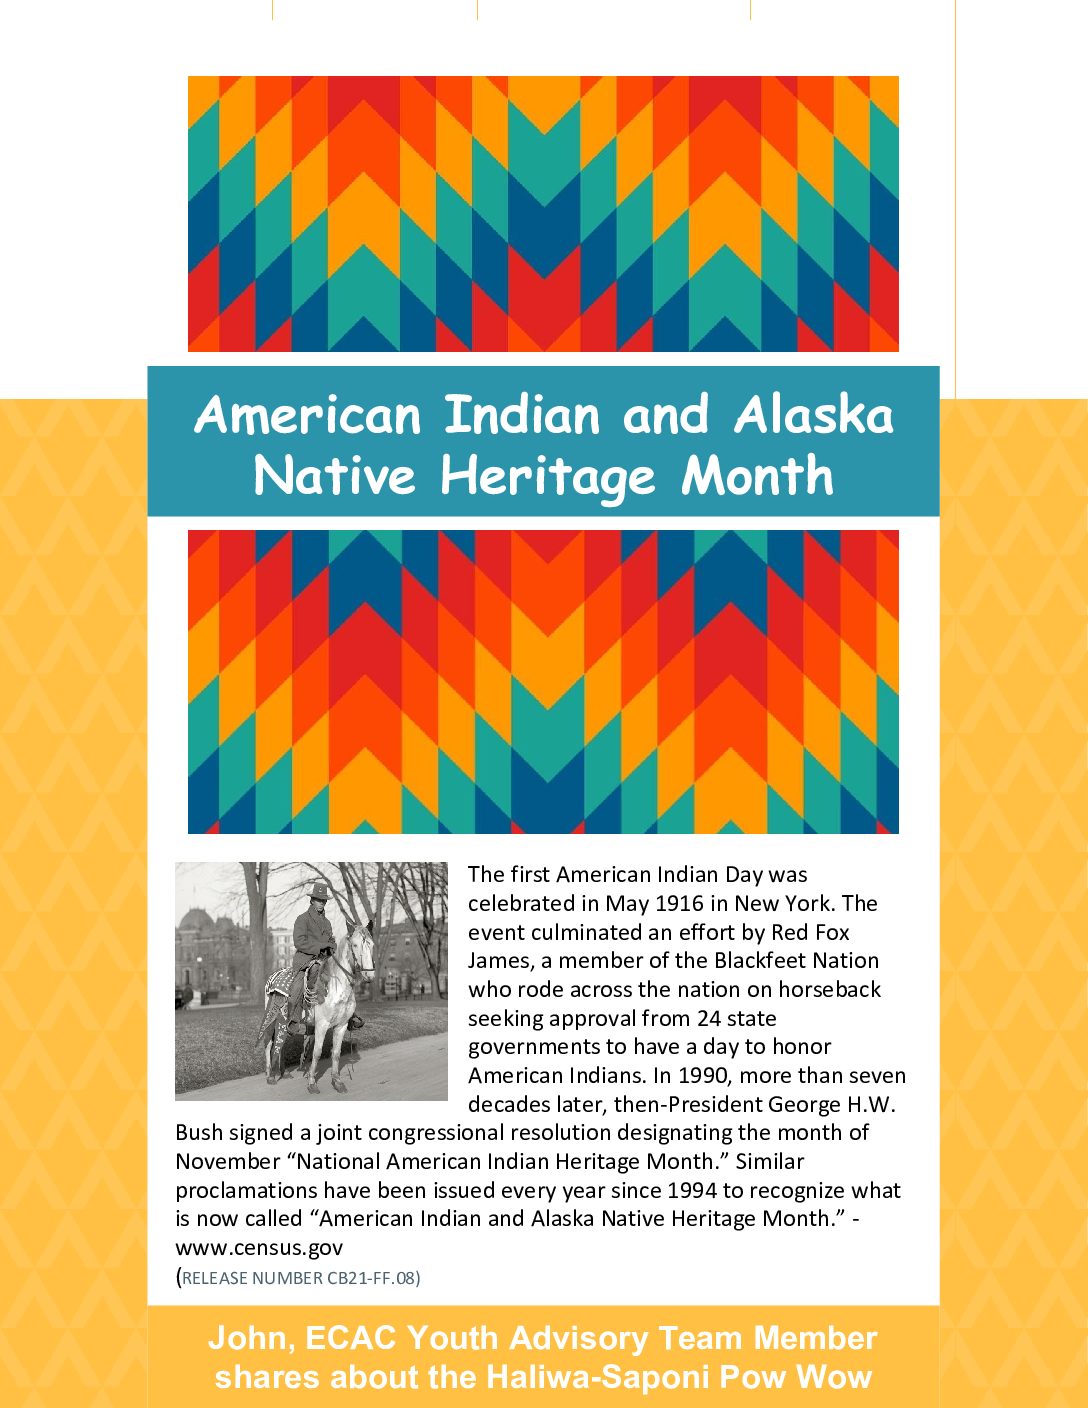 النشرة الإخبارية لشهر التراث الهندي الأمريكي وألاسكا الأصلي (4)